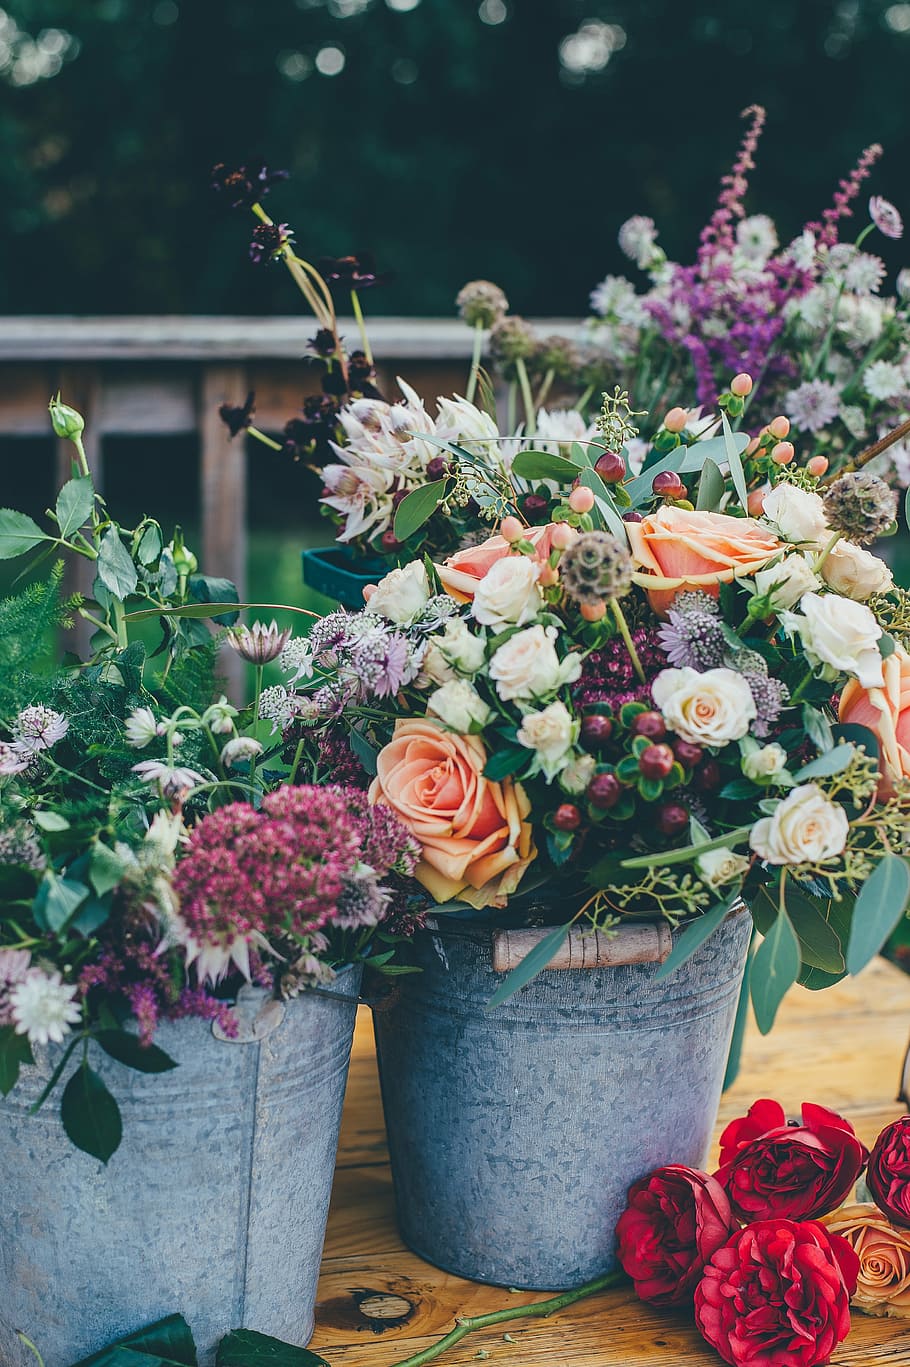 sortidas, flores, cinza, baldes de metal, plantas, flor, decoração, cacho, rosas, balde